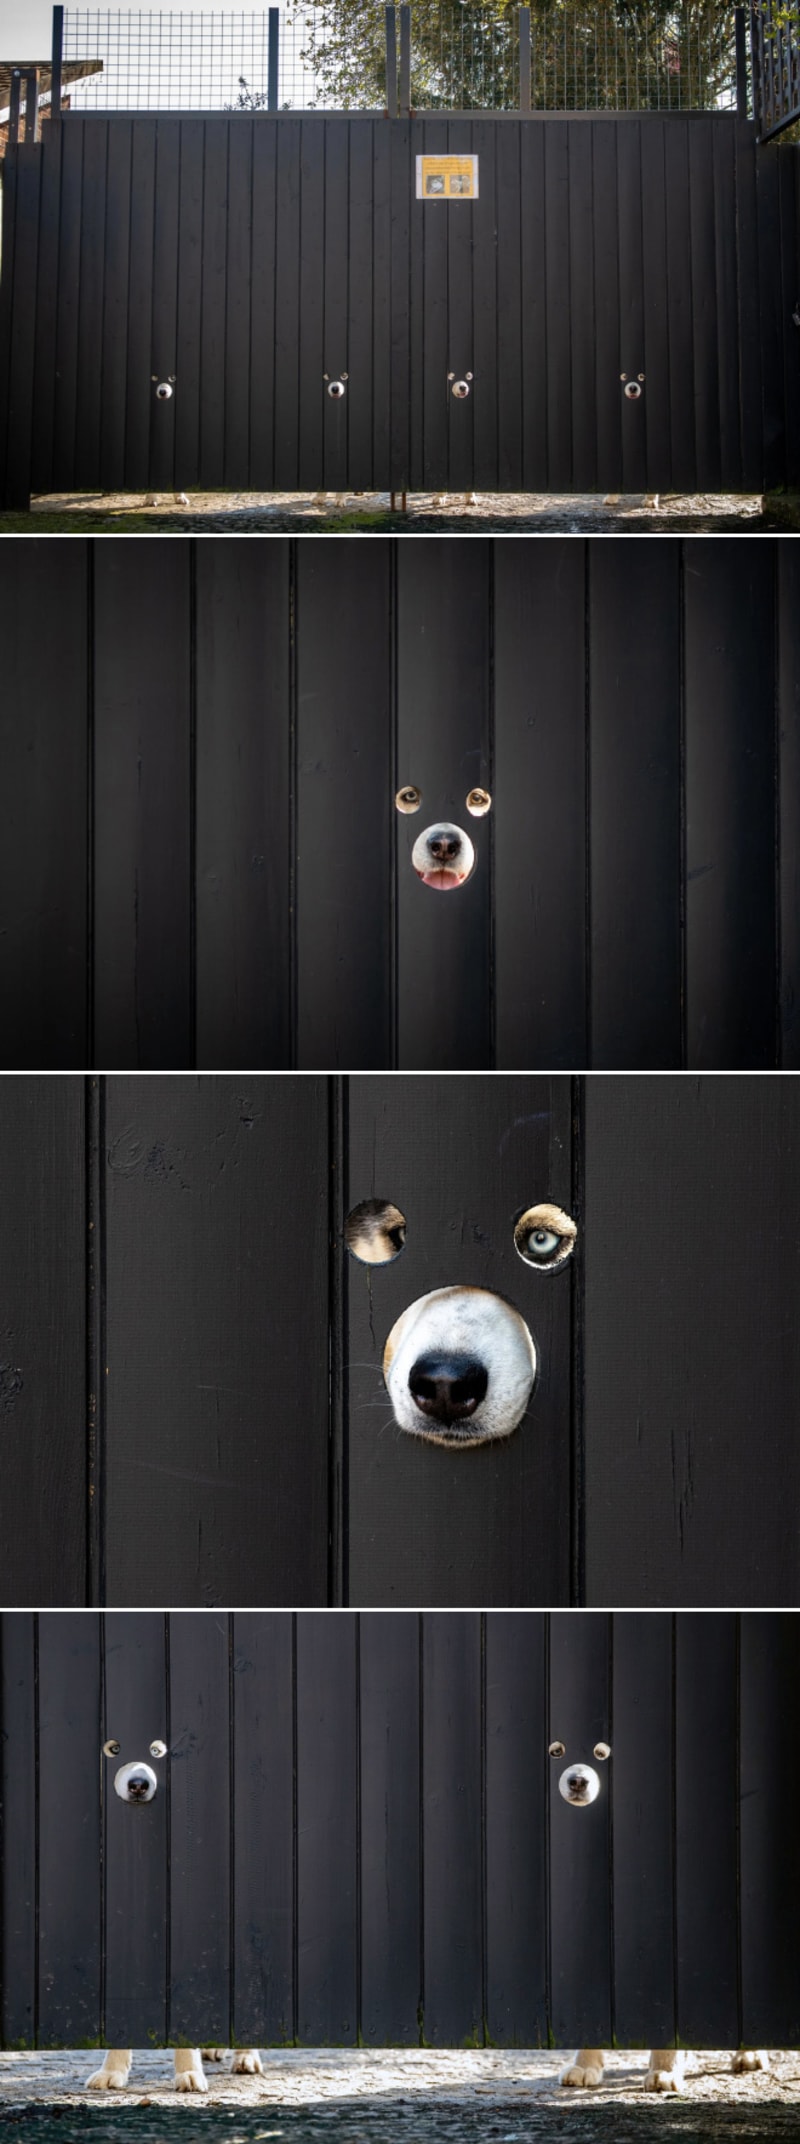 Vtipné fotky psů koukajících oknem v plotě 3